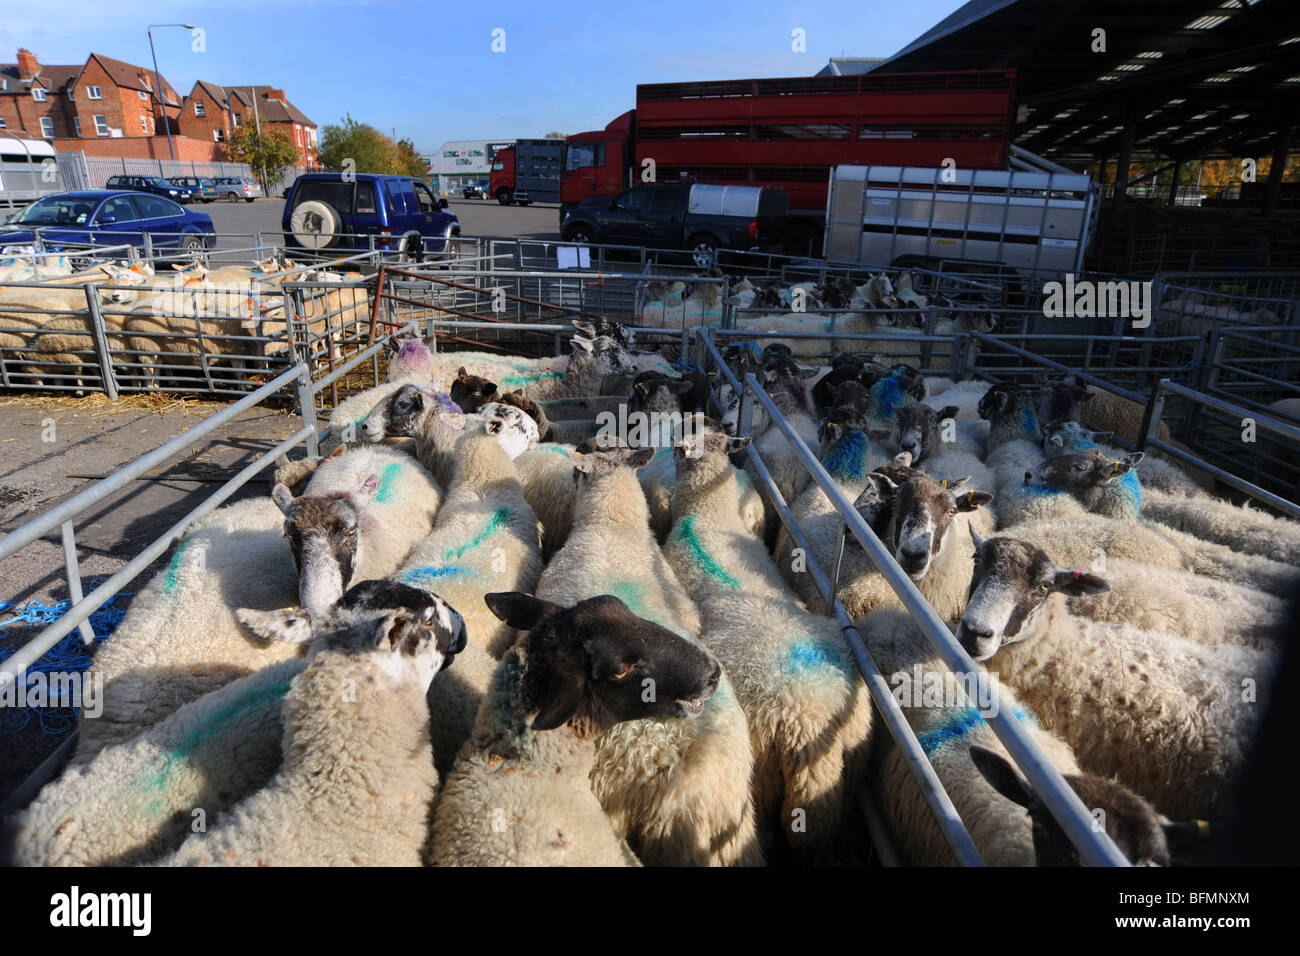 Attendre des moutons dans les stylos à Melton Mowbray, Leicestershire Royaume-Uni Marché Banque D'Images